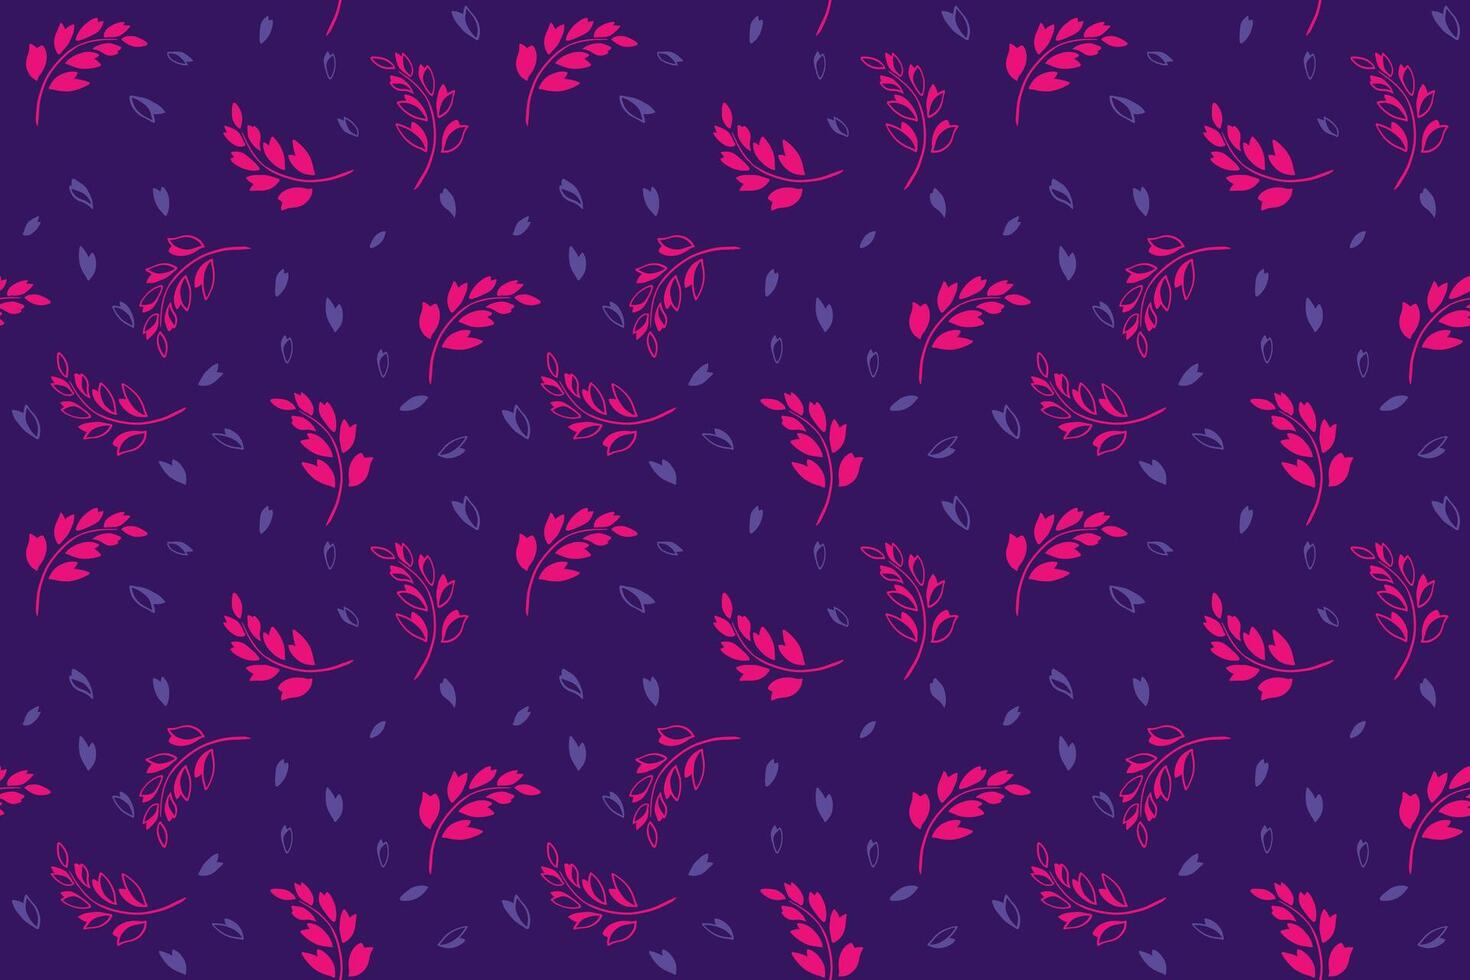 hell lila einfach nahtlos Muster mit abstrakt kreativ winzig Geäst Blätter, Formen, Tropfen. Niedlich, minimalistisch Vektor Hand gezeichnet drucken. Vorlage zum Design, Textil, Drucken, Mode, Stoff